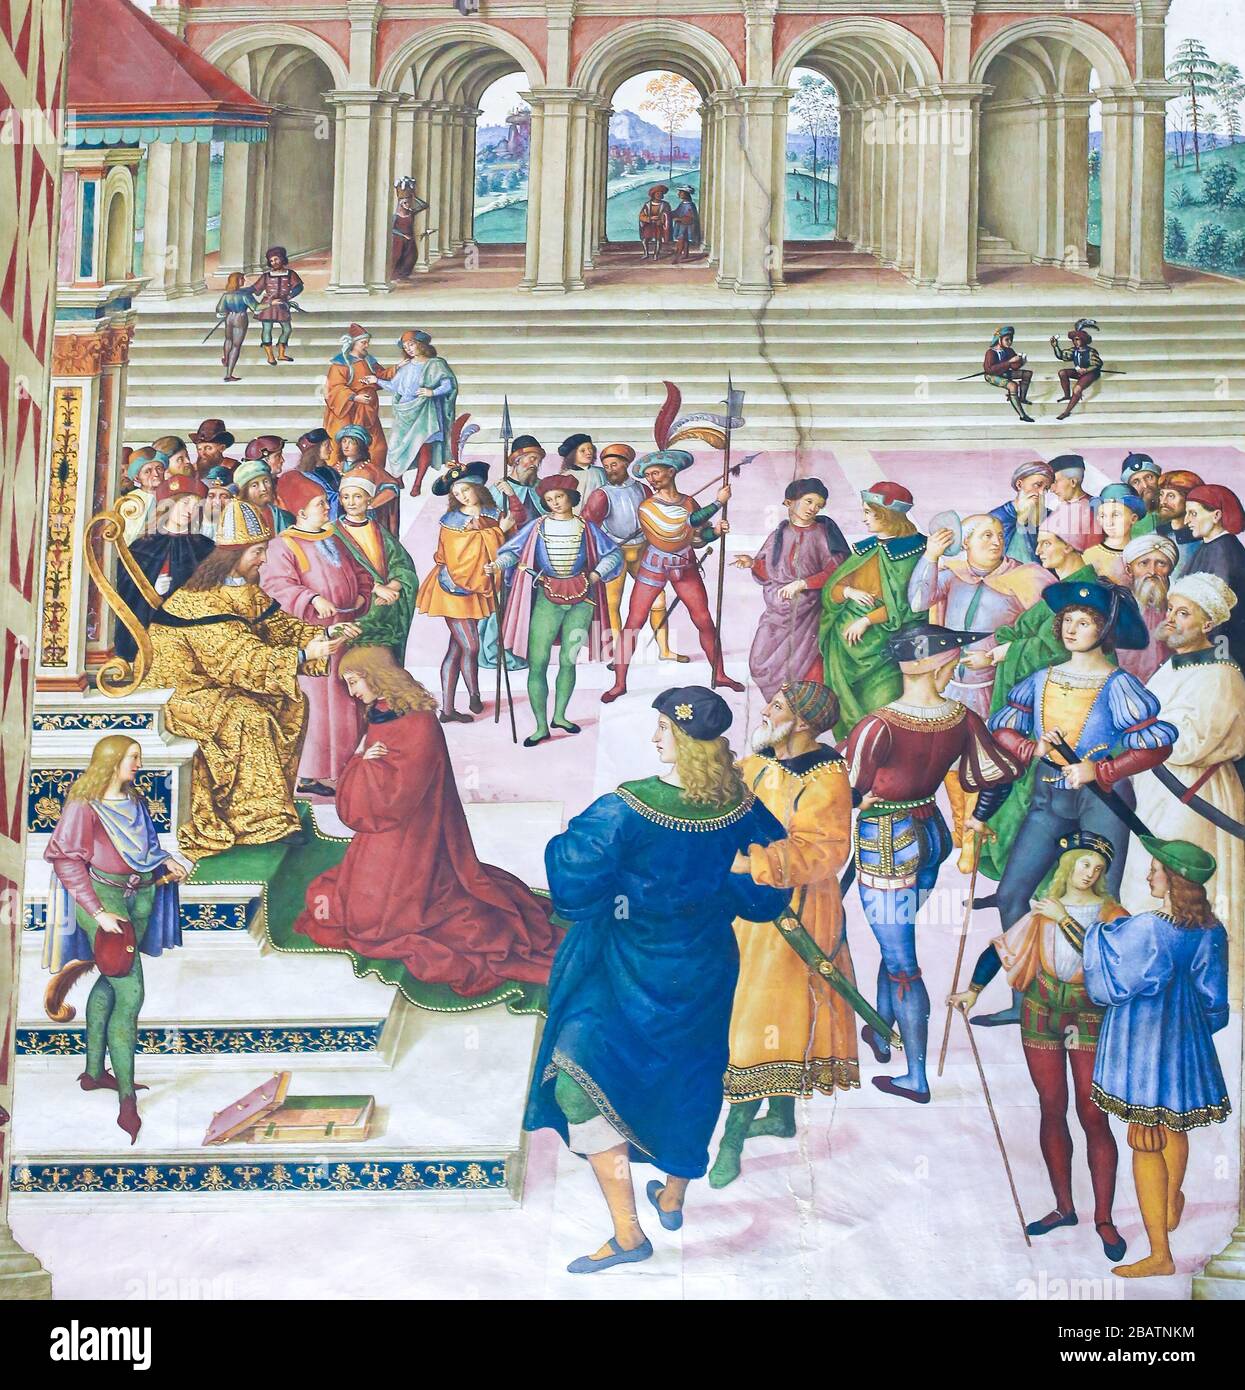 SIENA, ITALIA - 10 DE JULIO de 2017: Fresco en la Biblioteca Piccolomini en la Catedral de Siena, por Pinturicchio, representando Enea ilvio Piccolomini coronado poeta corte b Foto de stock